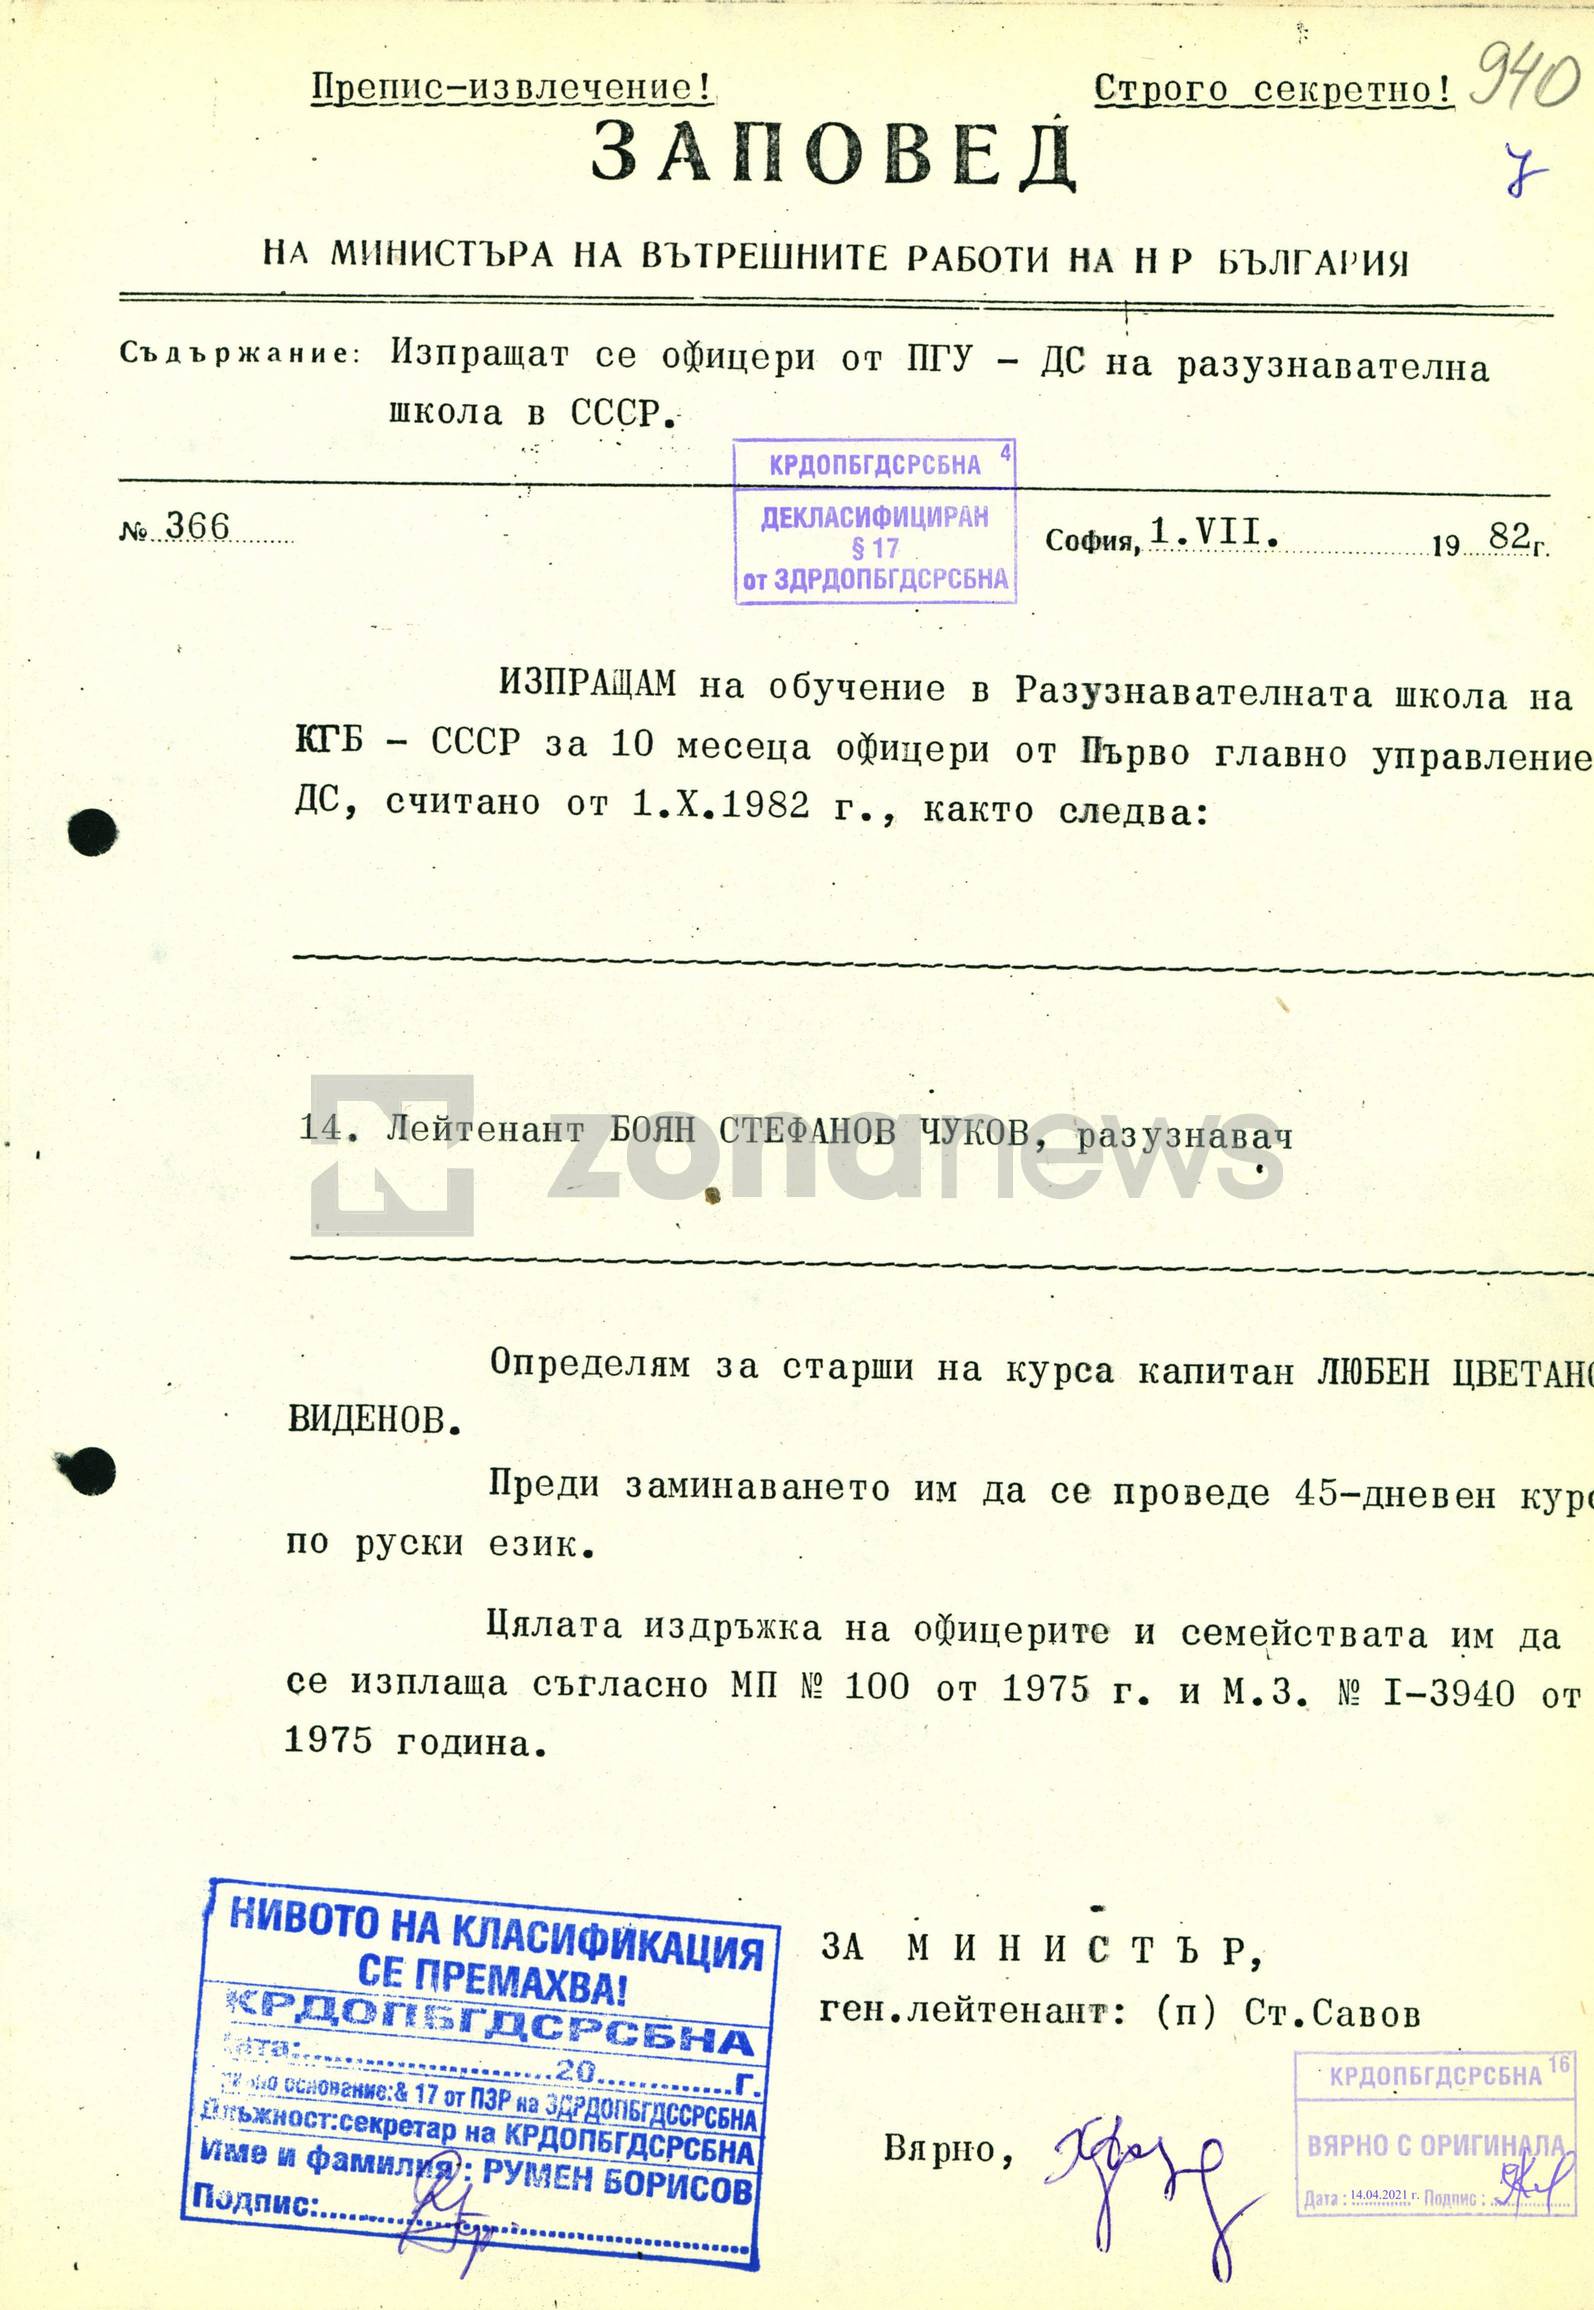 Заповедта за изпращането на Боян Чуков в 10-месечна школа на КГБ в Съветите